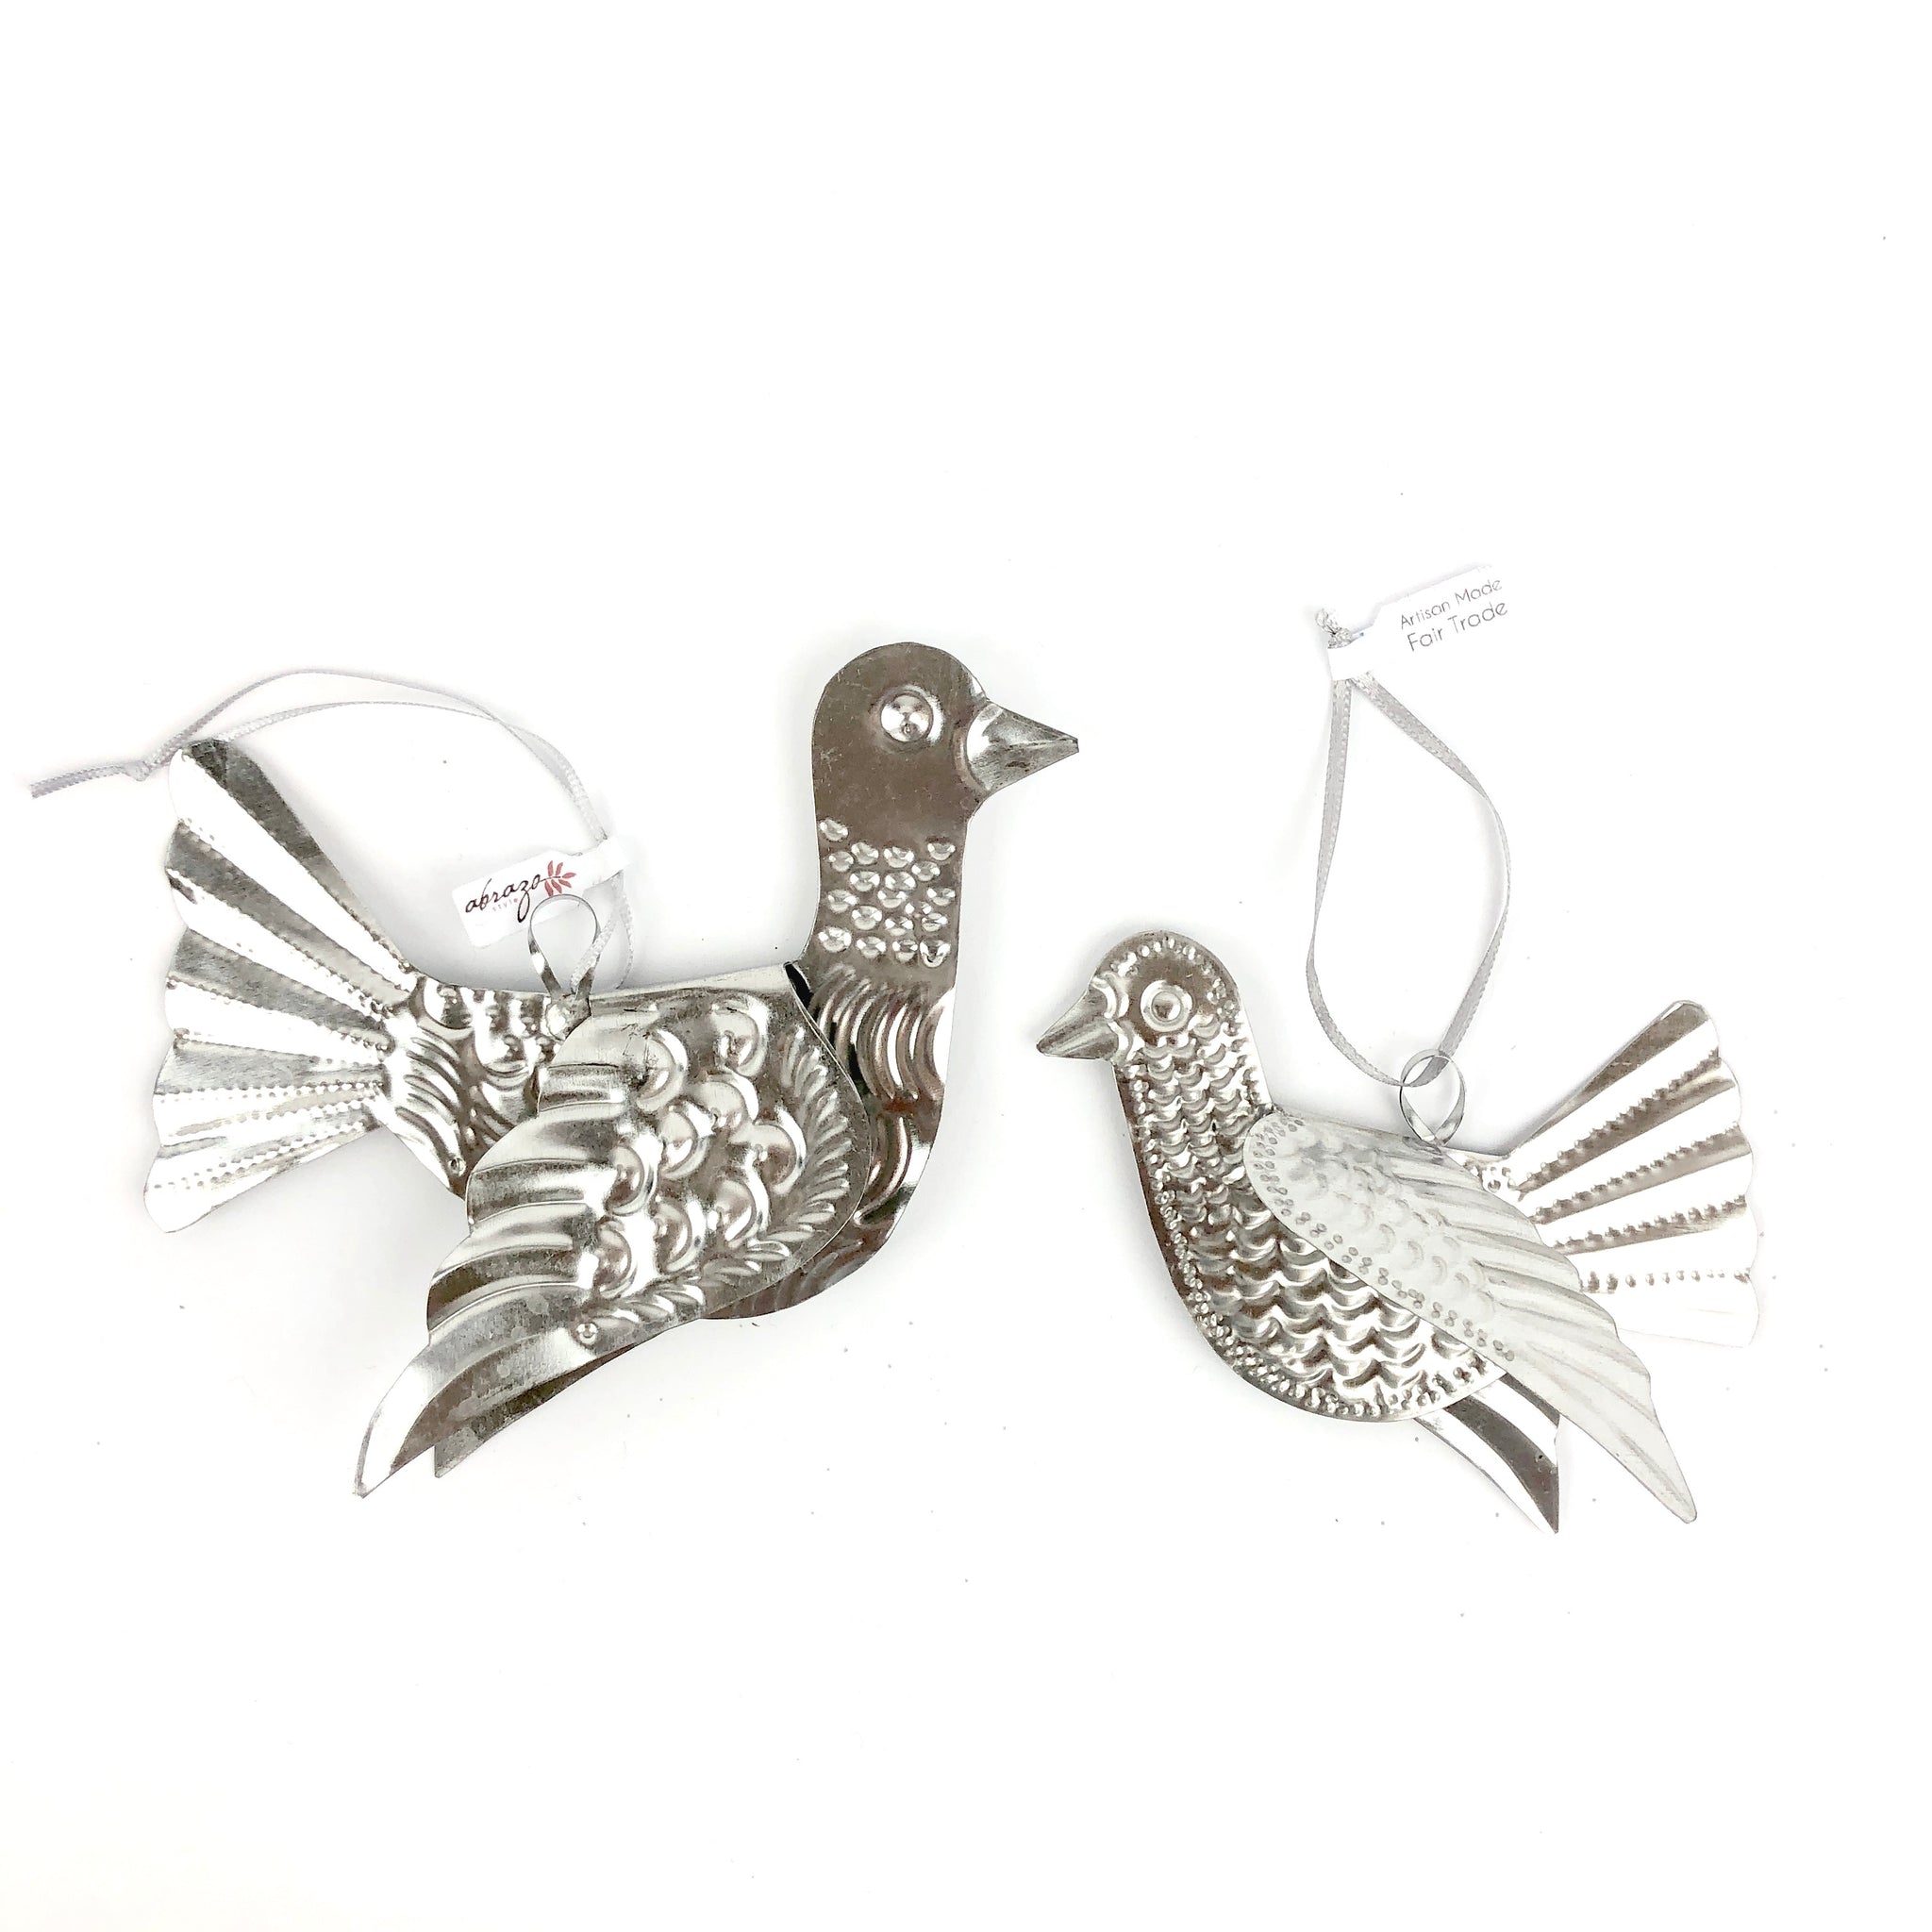 Mexican tin bird ornament, tin ornament, dove ornament